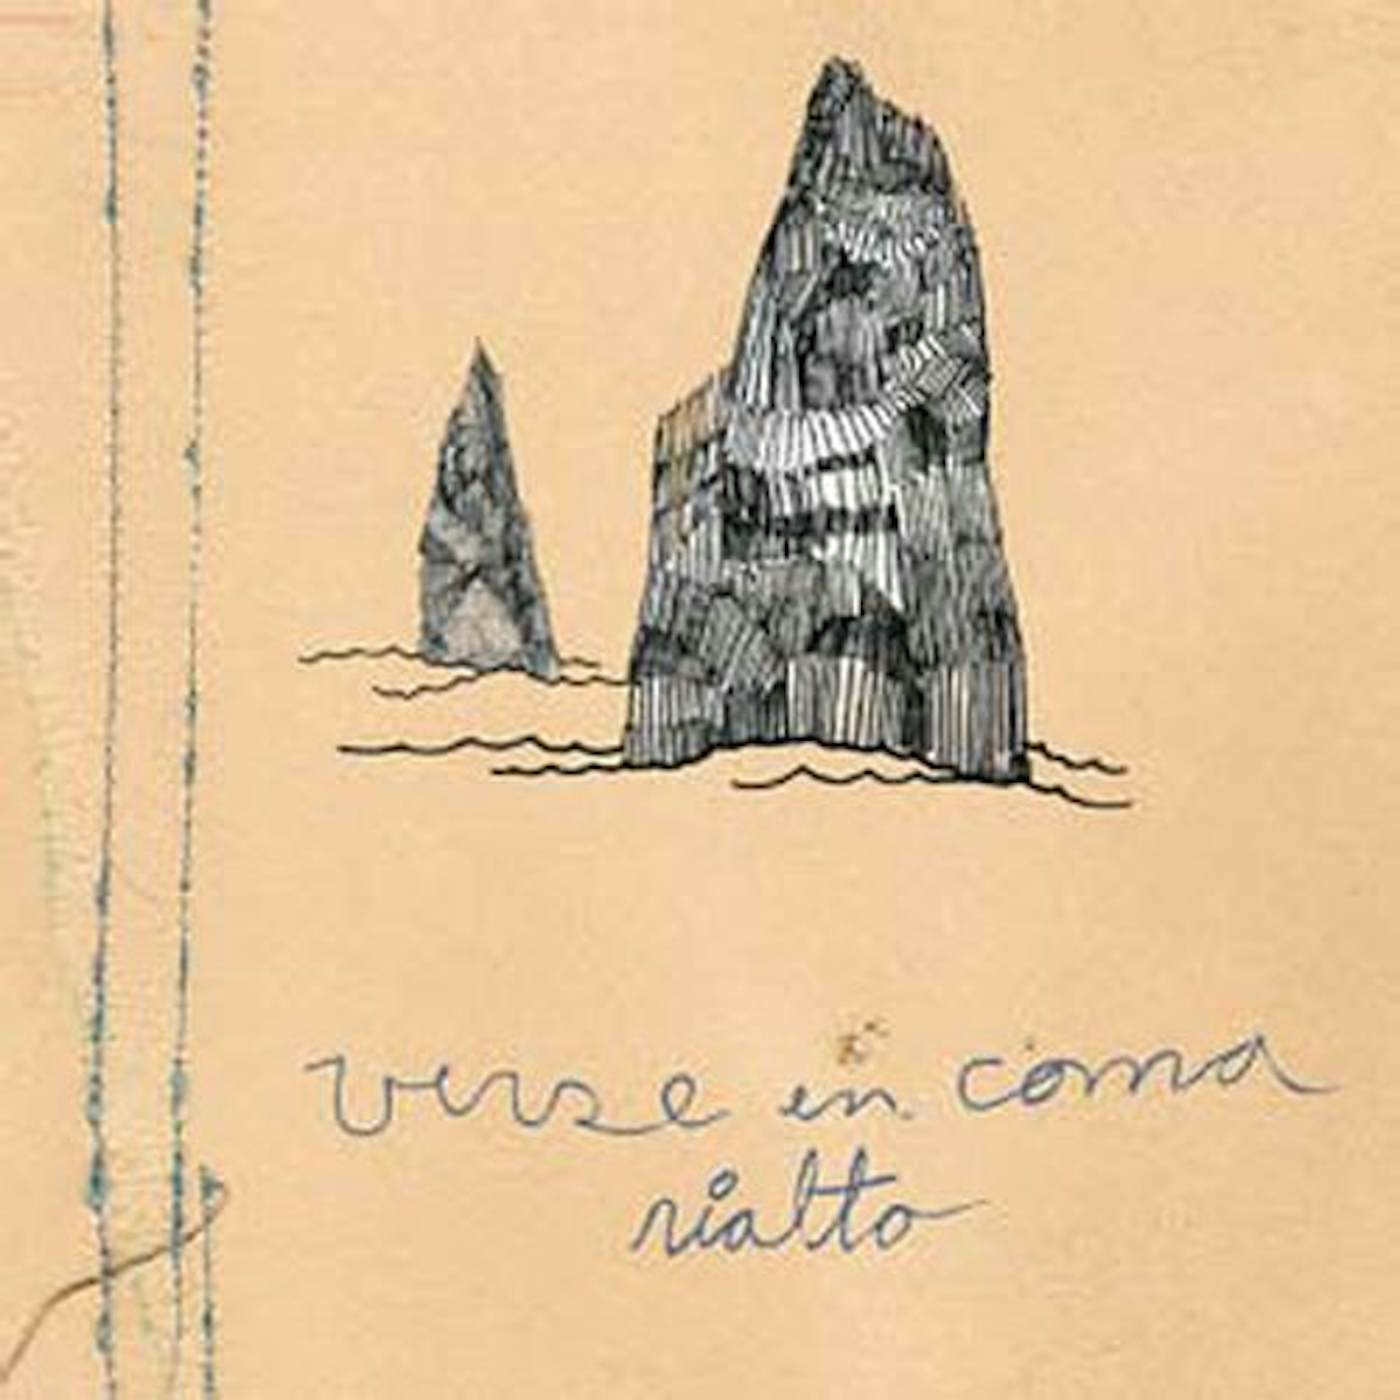 Verse En Coma Rialto Vinyl Record